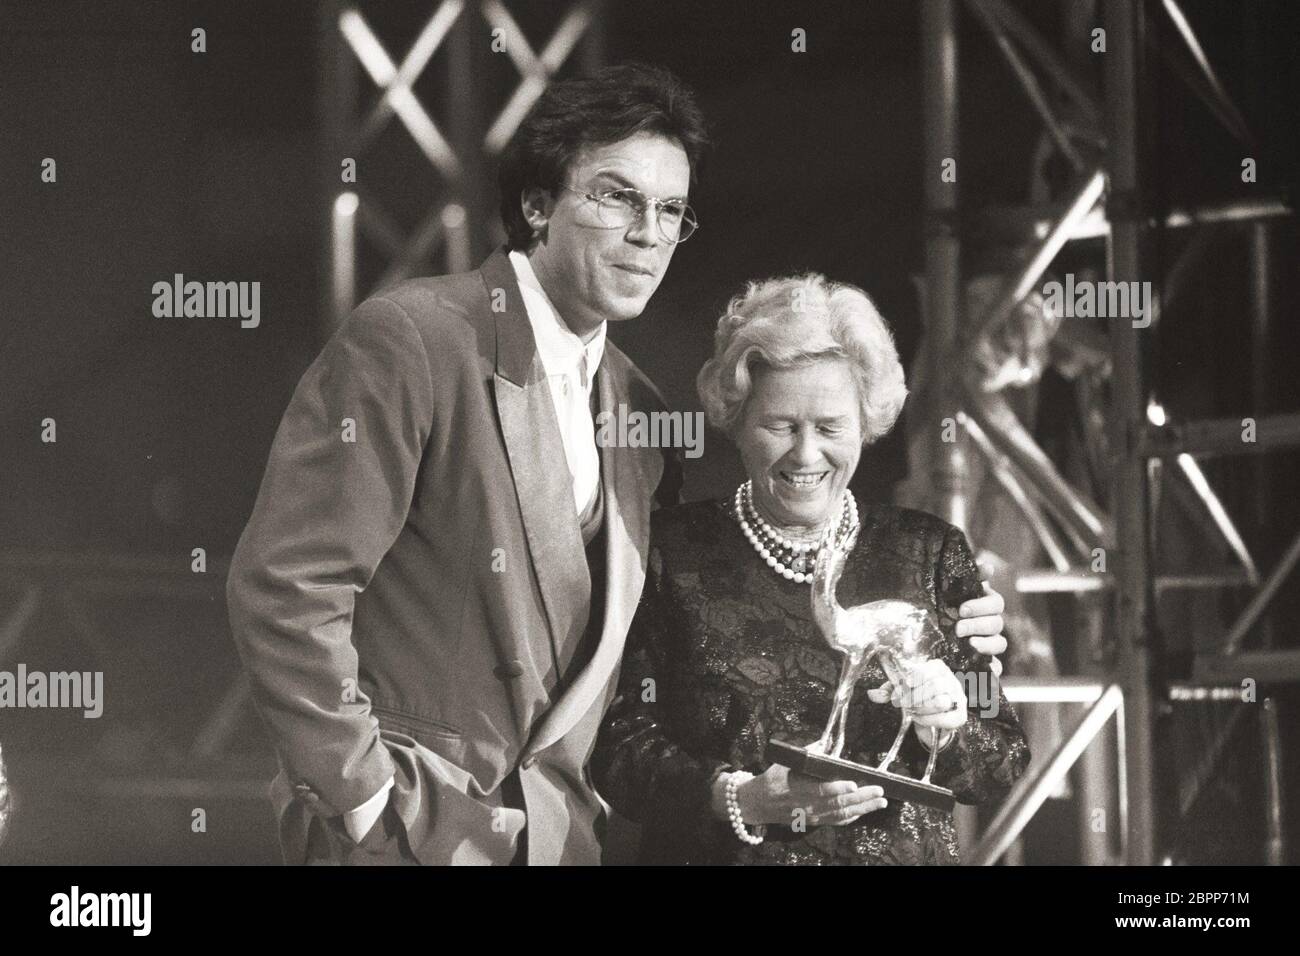 BAMBI Verleihung im MARITIM Köln // 11.12.1992 - Auf dem Bild der Entertainer Wolfgang Lippert (links) überreicht den BAMBI 'Wirtschaft' an die Unternehmerin Grete Schickedanz (rechts) im MARITIM Köln in den 90ern. Stock Photo